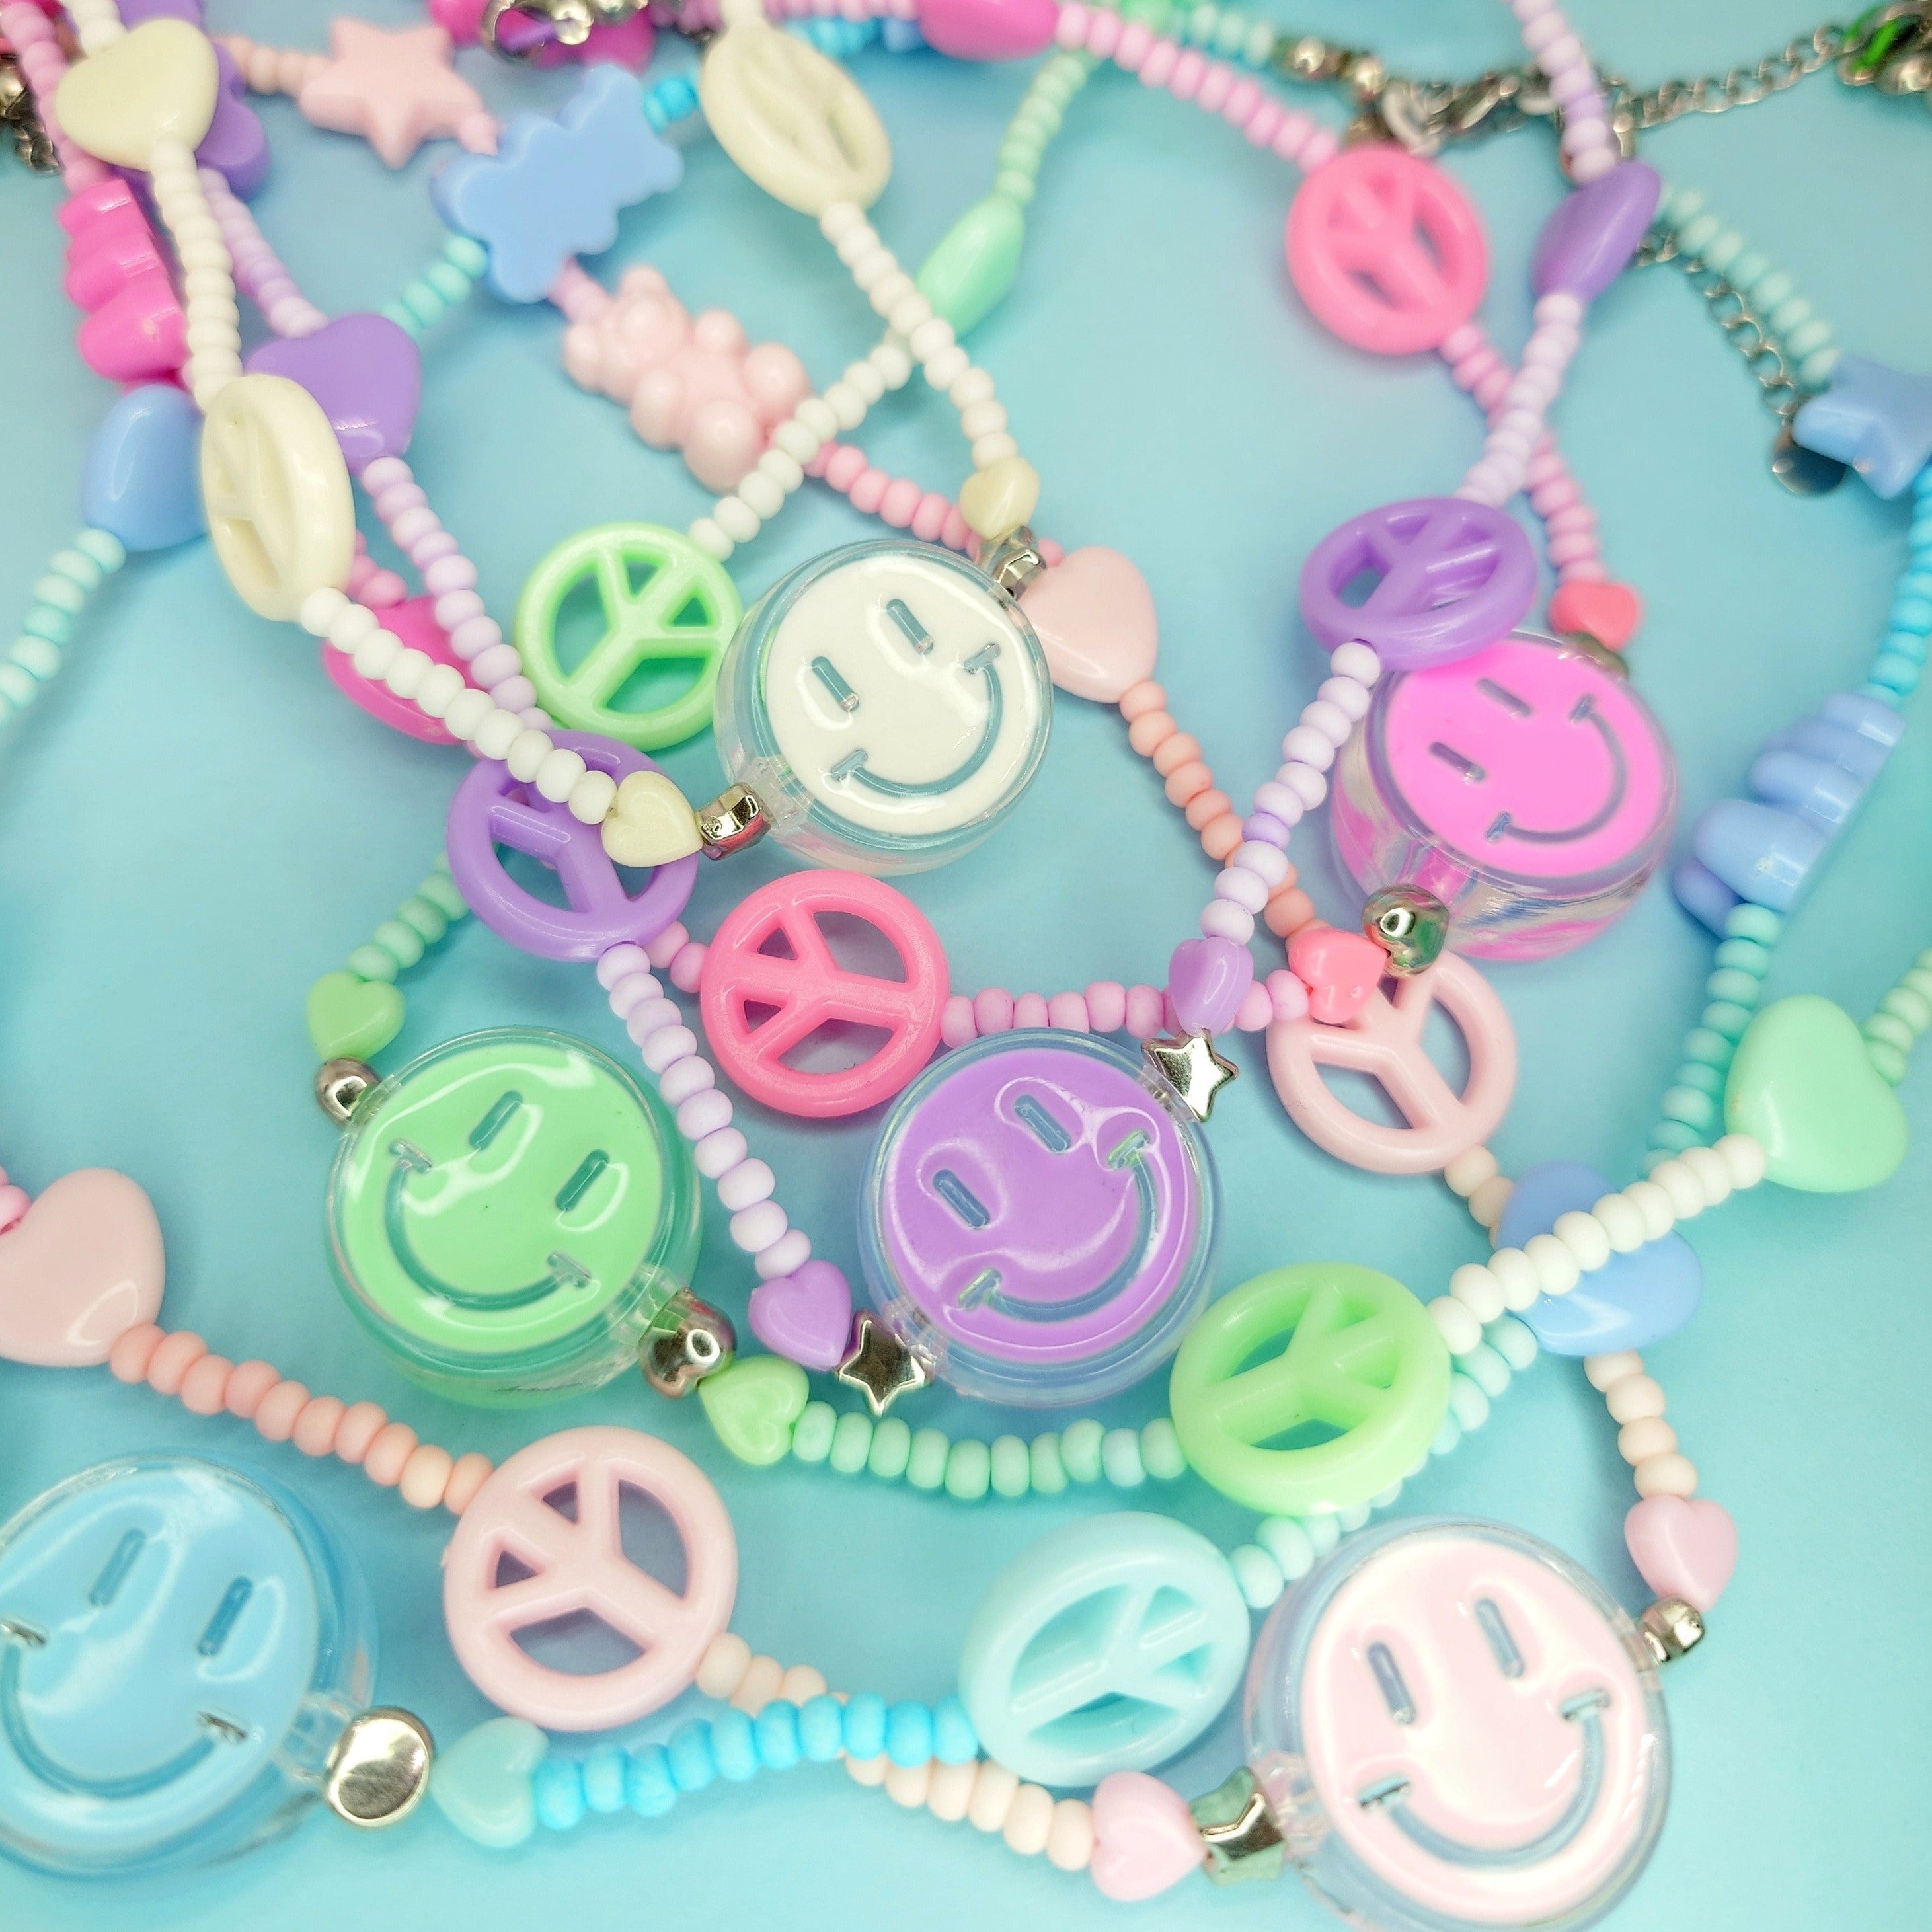 Y2k Bracelet For Teen Girls?Smiley Face Flower Heart Indonesia